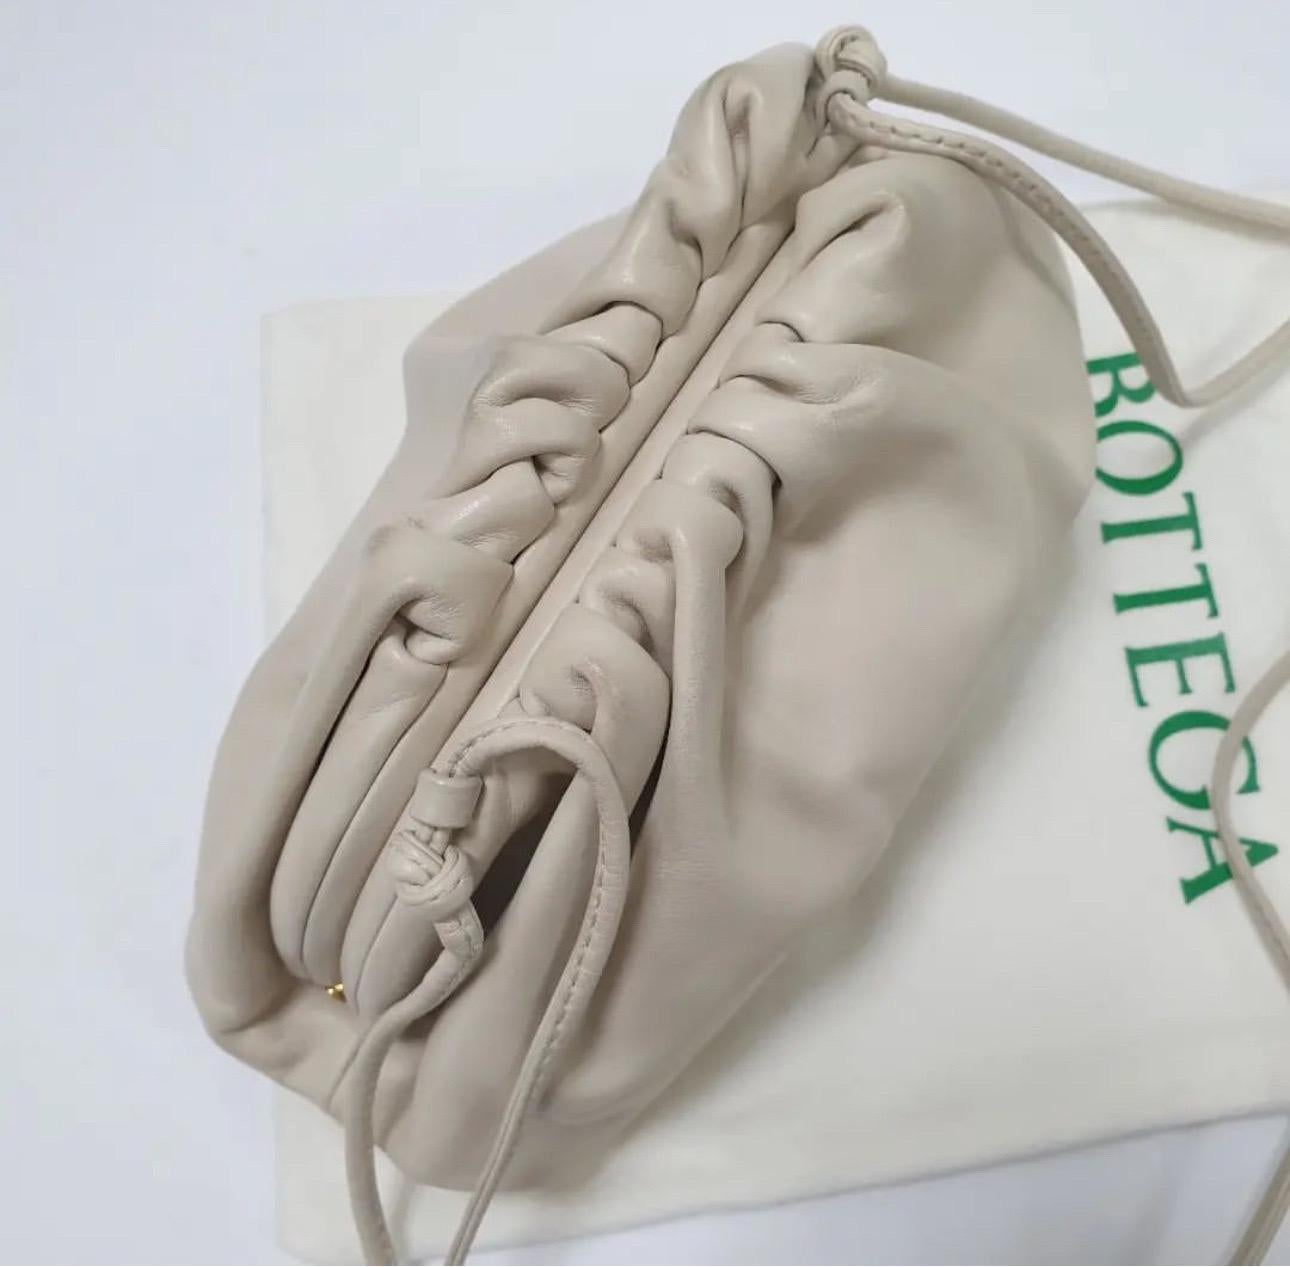 Bottega Veneta fällt es leicht, minimalistische Ästhetik mit modernen Nuancen zu kombinieren. Diese Teen Pouch Clutch aus beigem Leder verleiht dem Ganzen Kraft. Er hat eine weiche Konstruktion mit Rüschen auf dem Oberteil. Schön unter den Arm